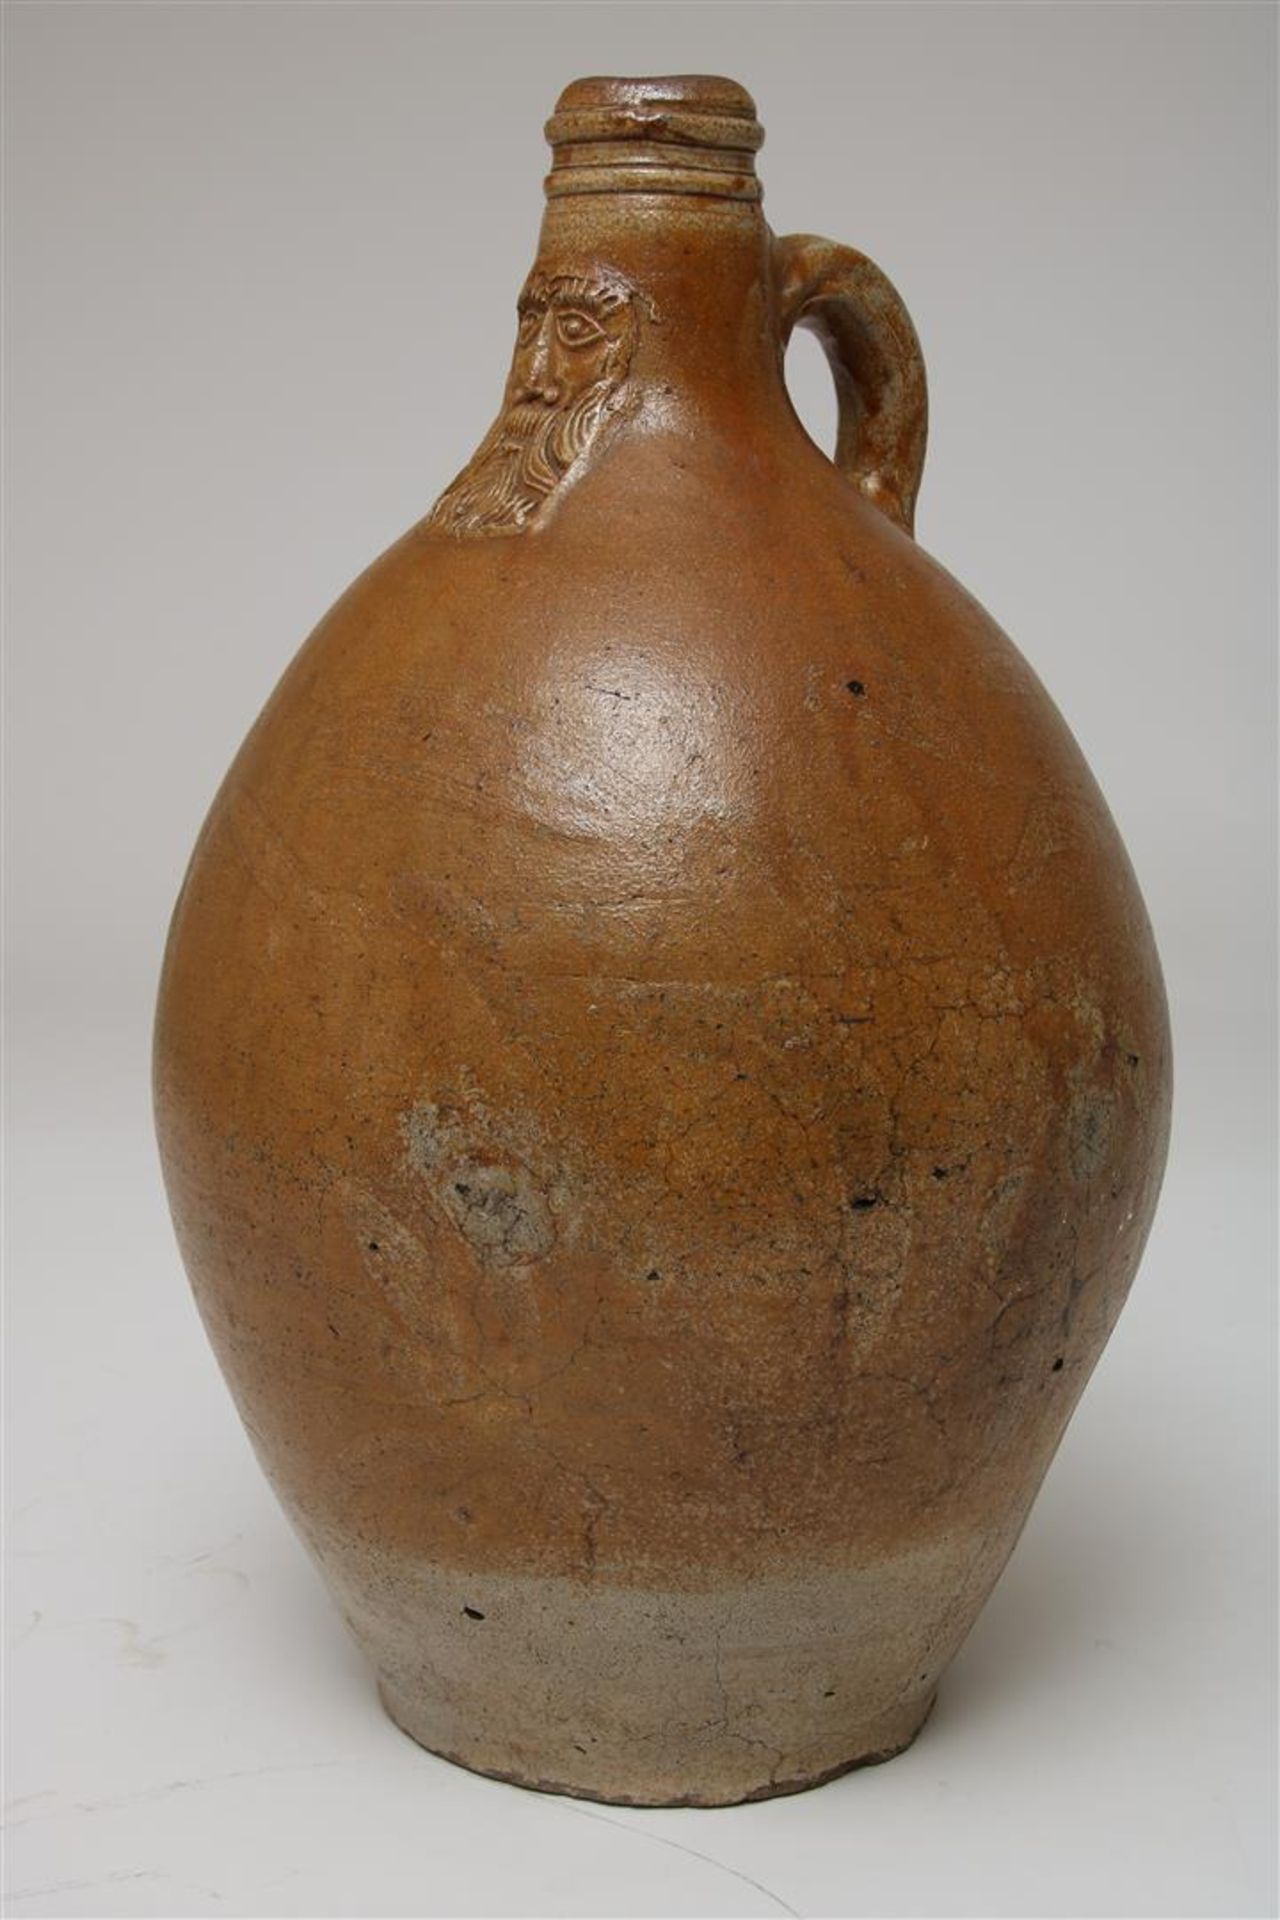 Stoneware Bartmann jug